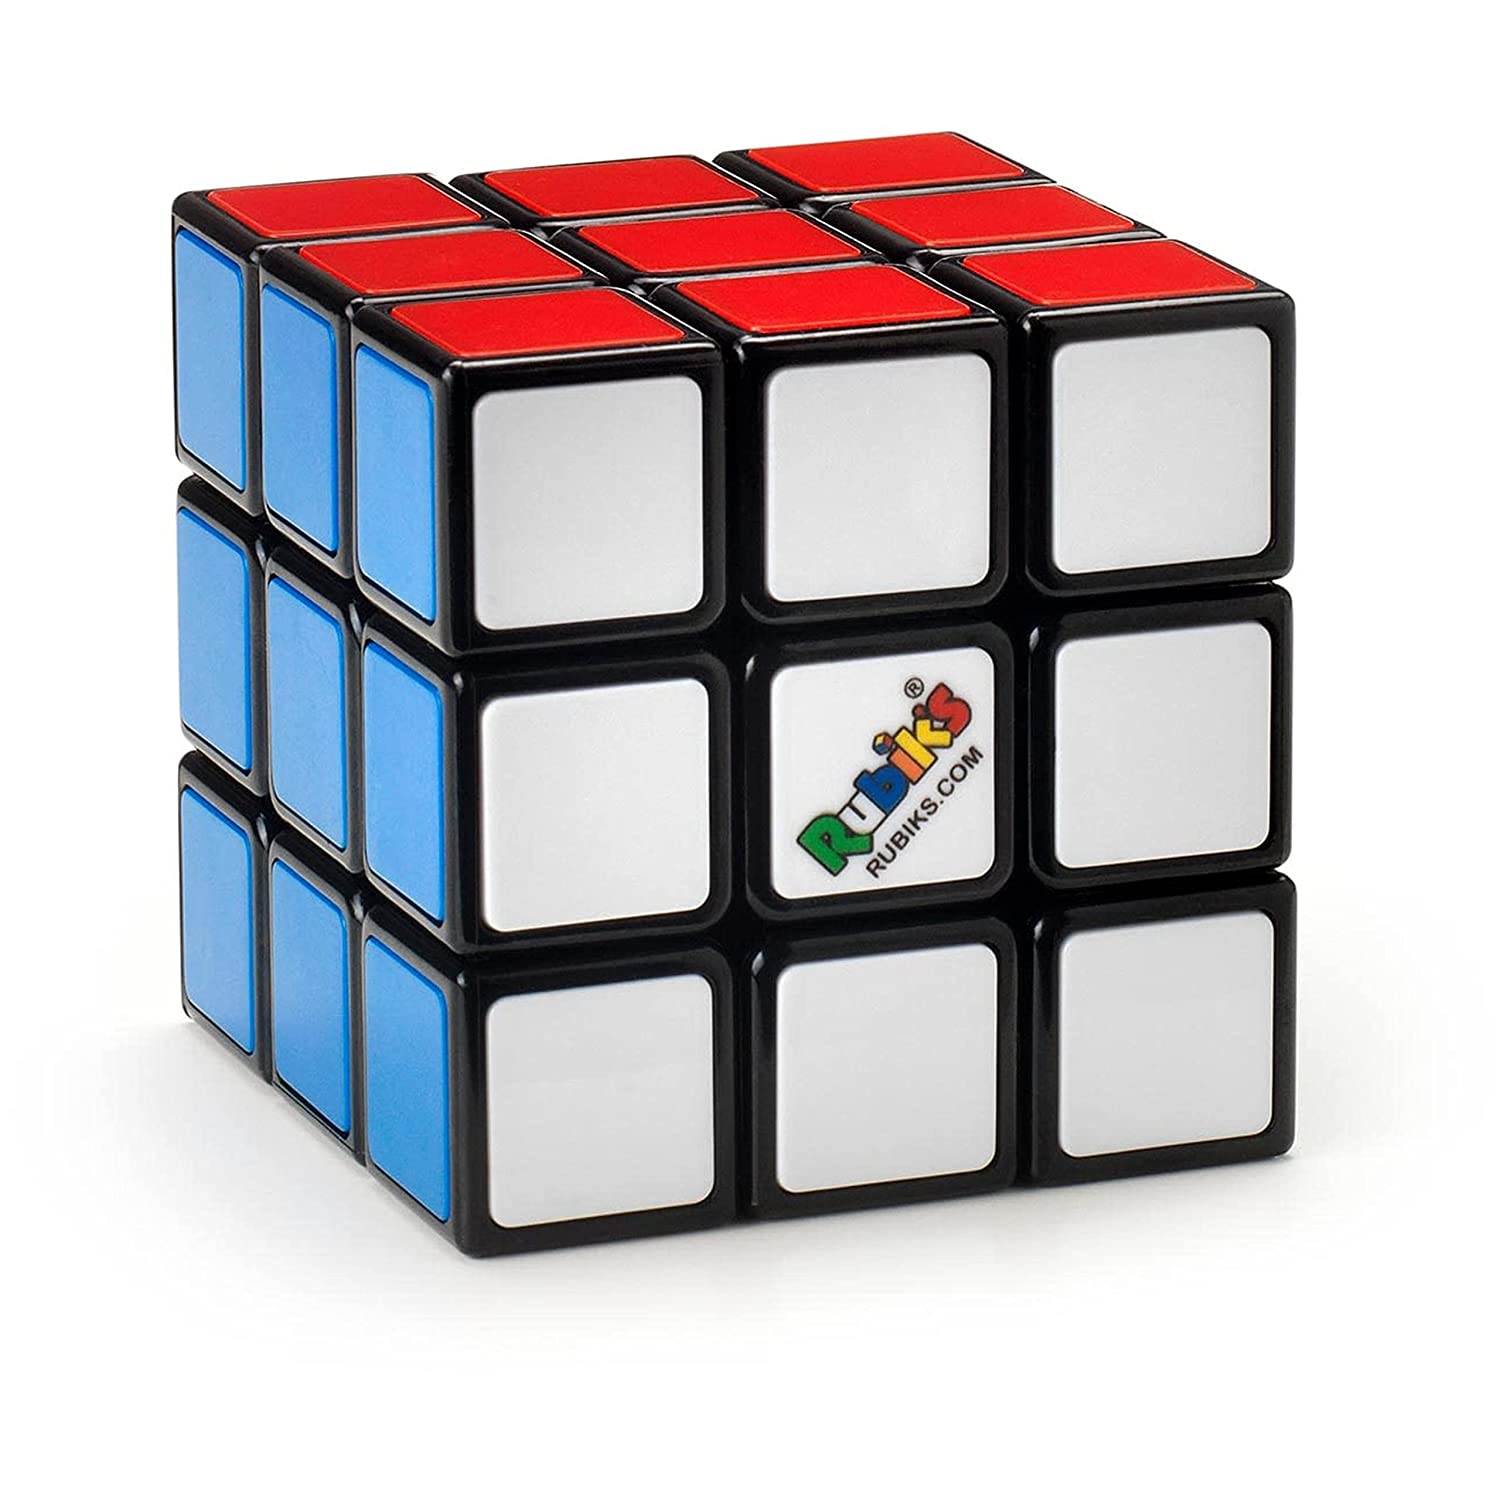 Spinmaster Rubik's Cube 3*3 - Rubik Phantum 3 X 3 Spin Master Game Toy